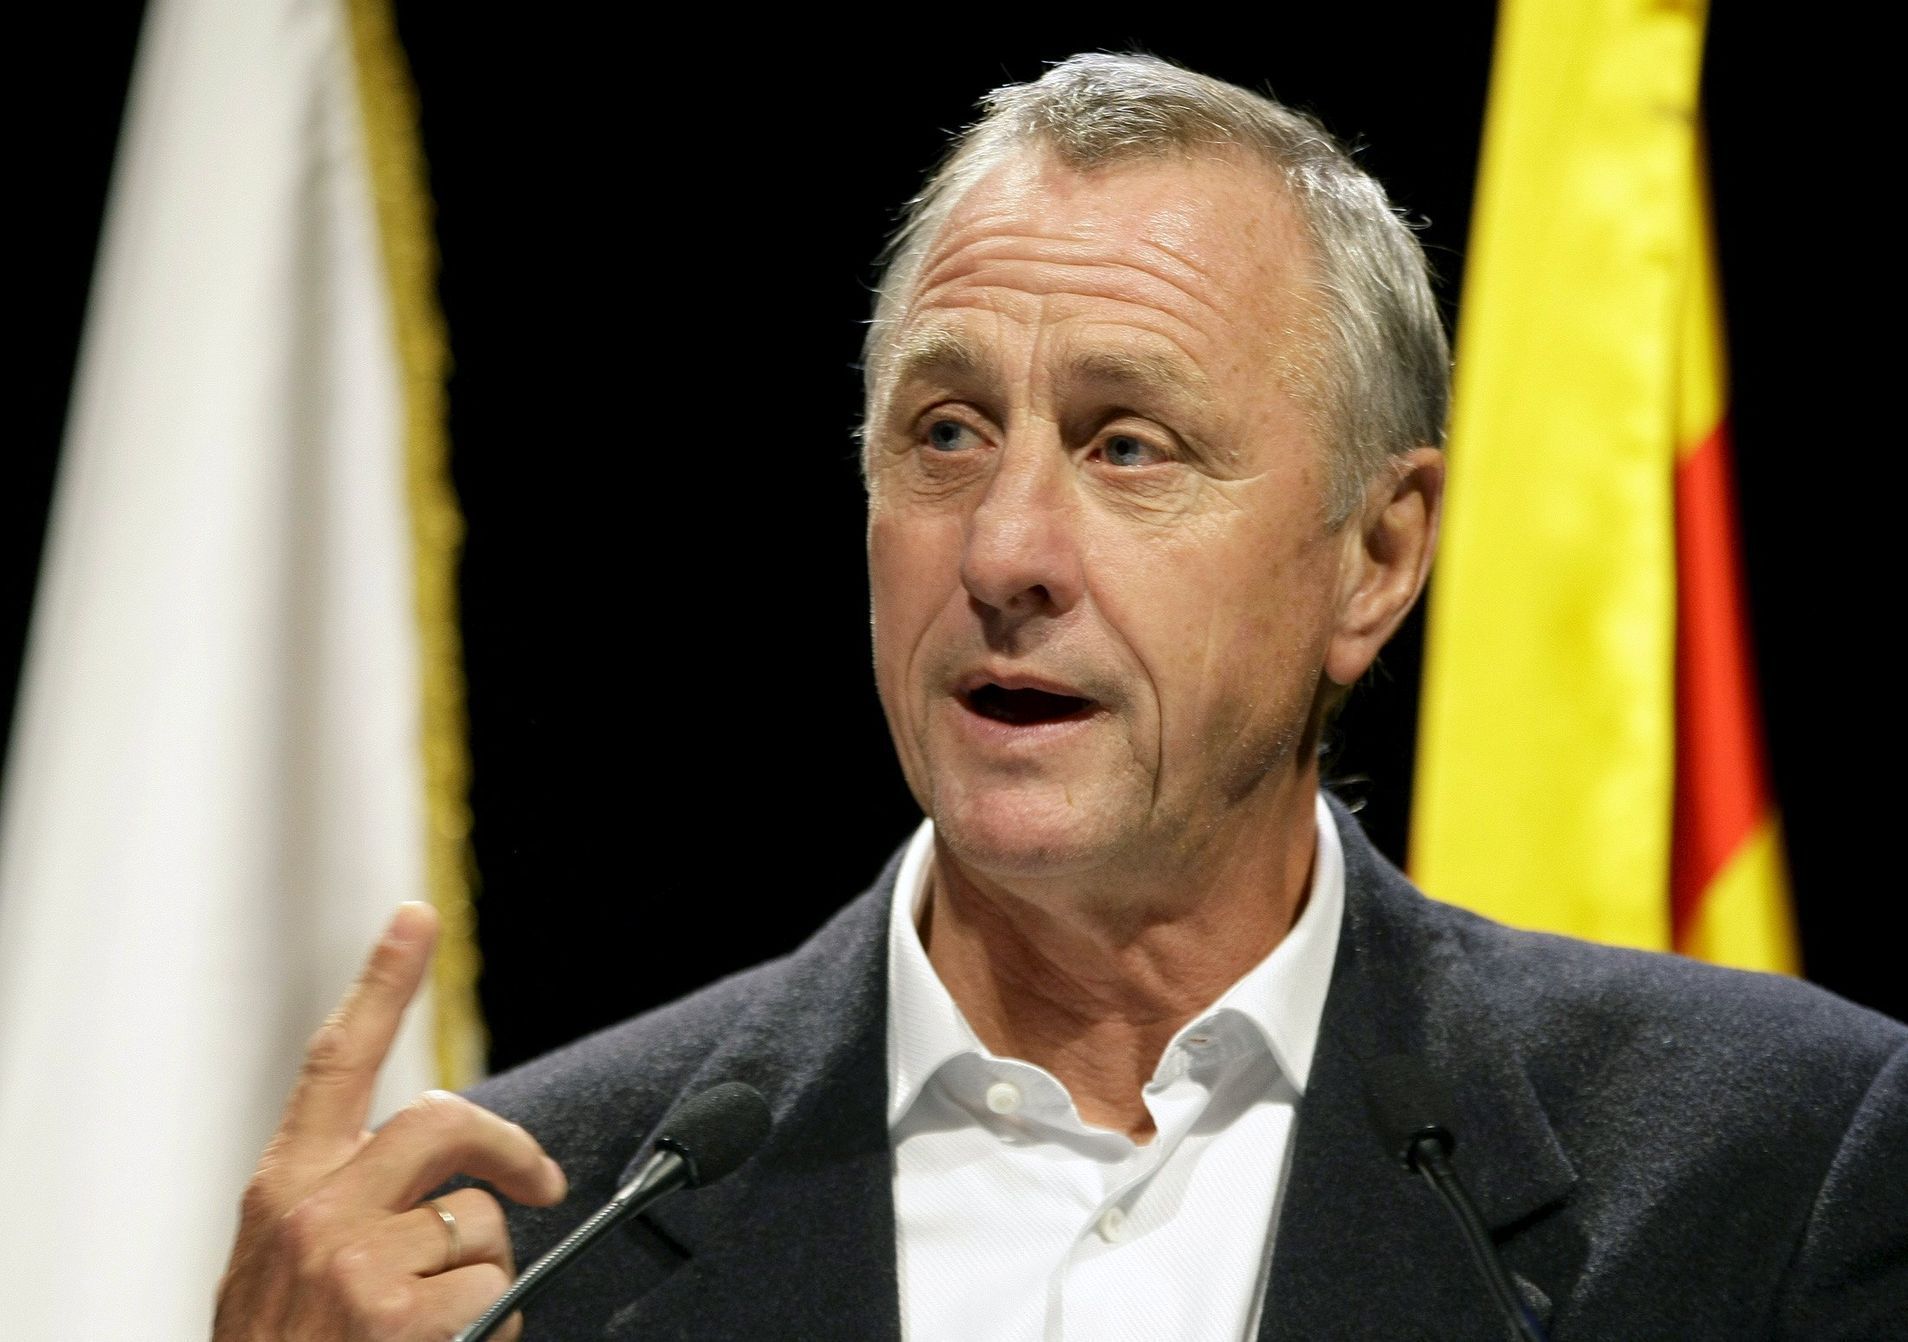 Johan Cruyff (2009)